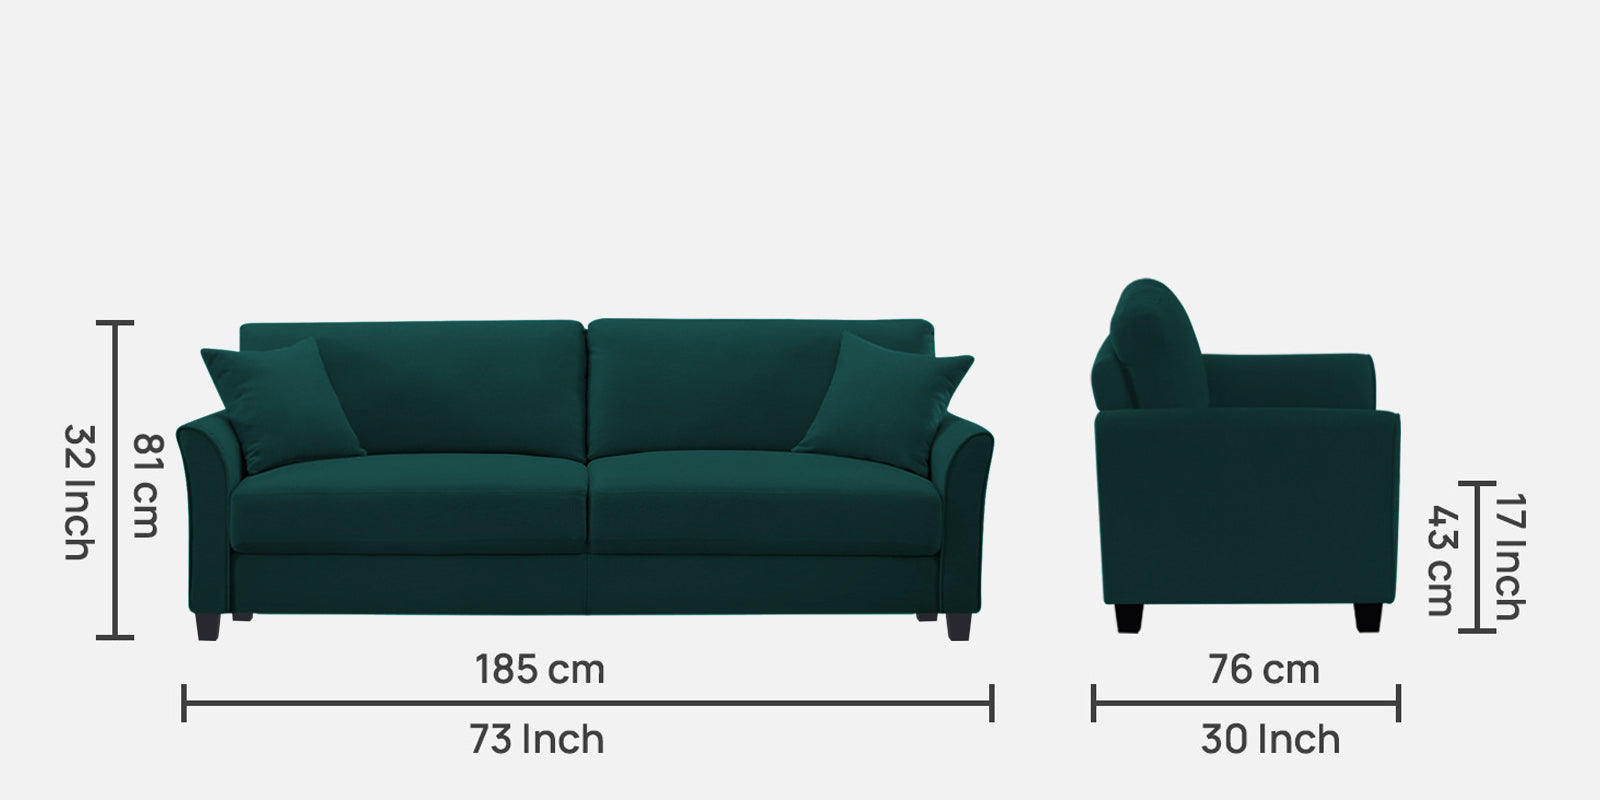 Daroo Velvet 3 Seater Sofa in Forest Green Colour